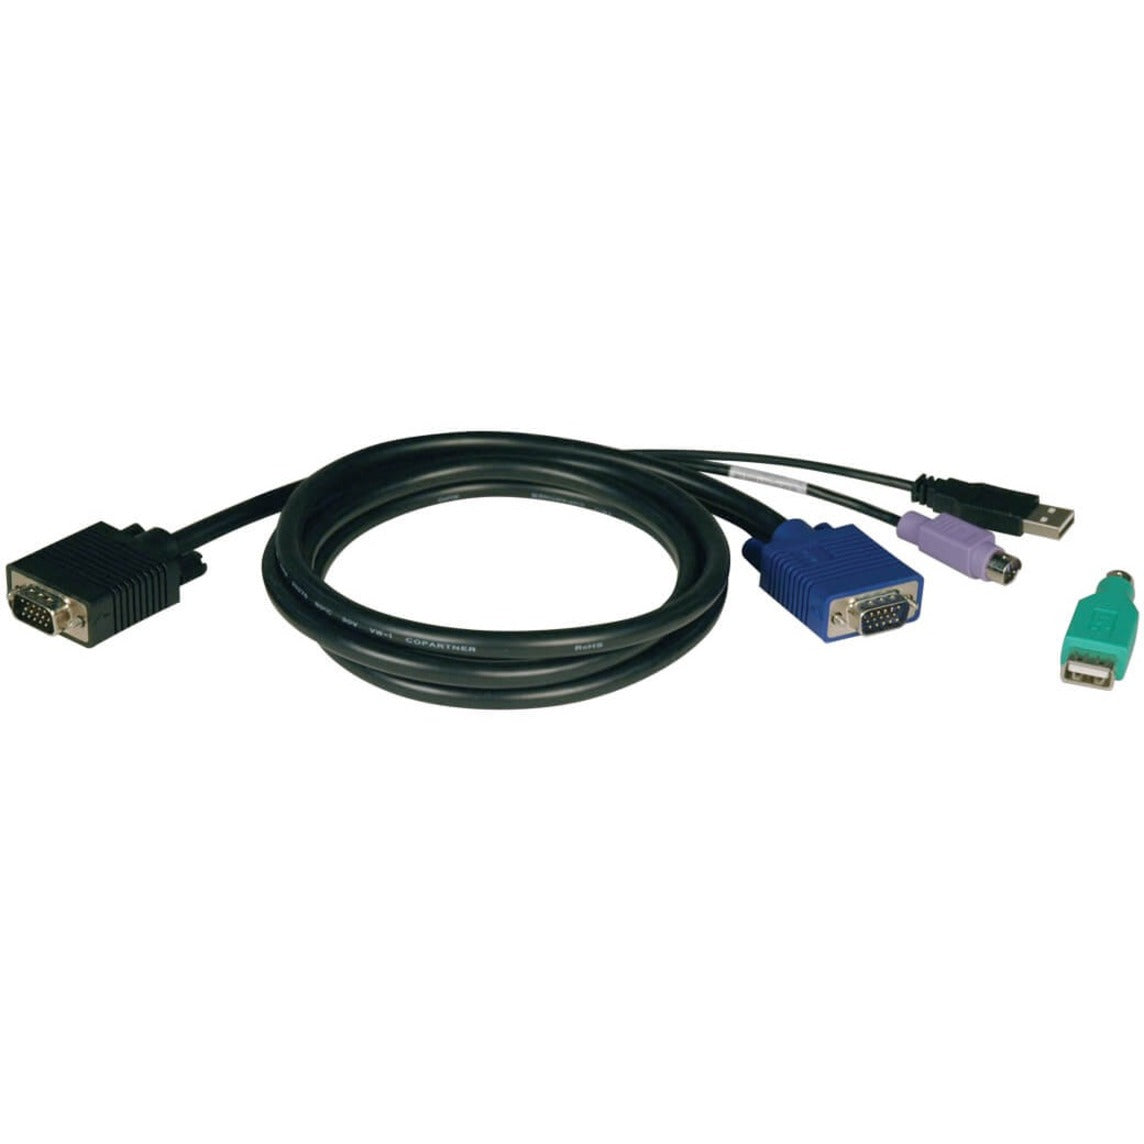 Tripp Lite P780-006 KVM Cable Kit for B042 Series KVM Switches, 6FT PS2/USB